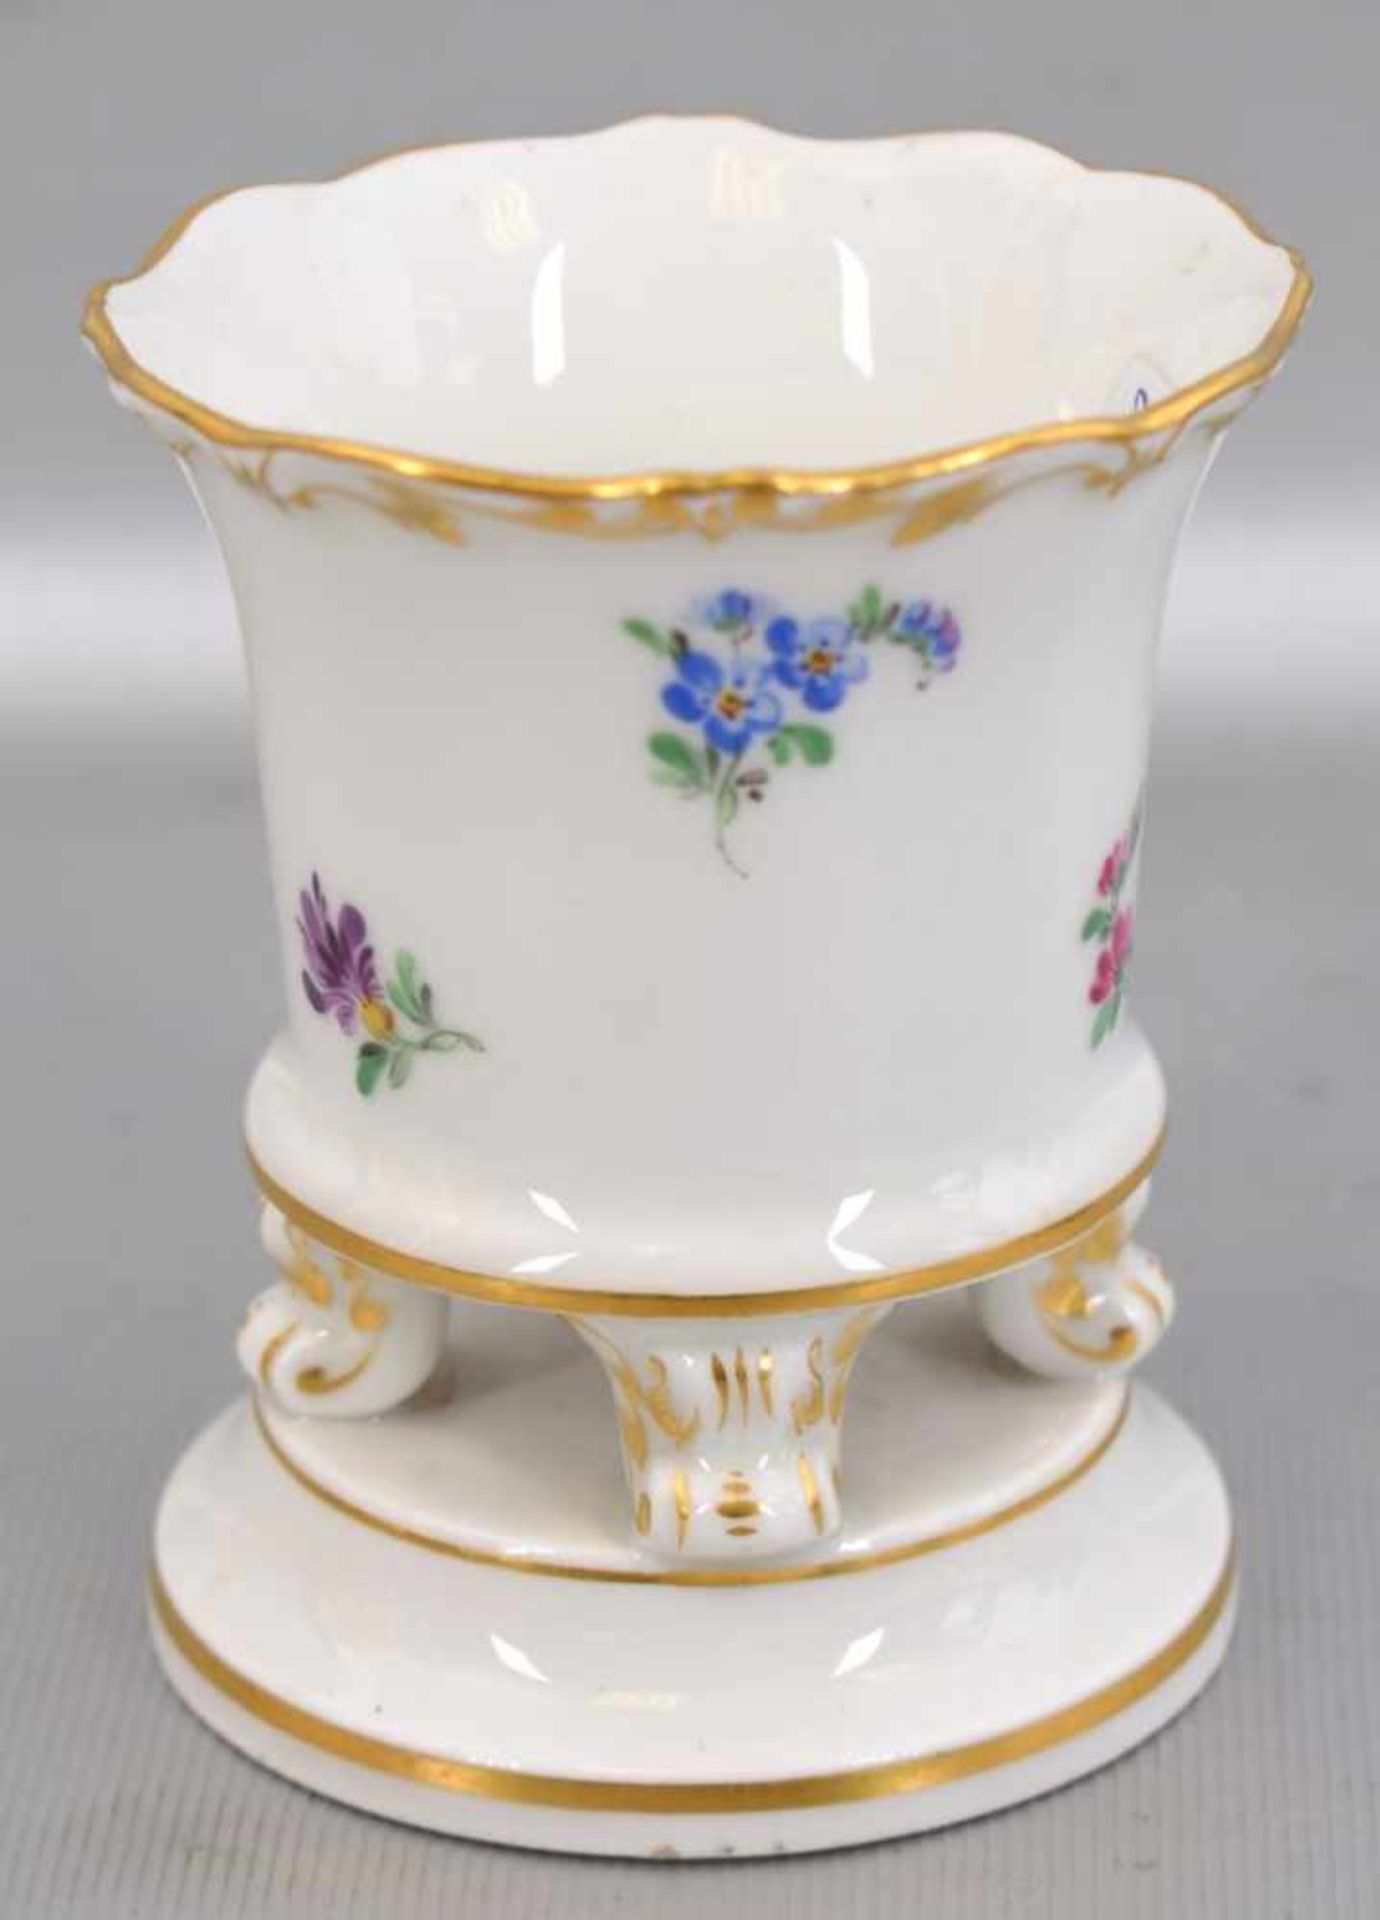 Vase runder Sockel, Vase auf drei Füßen stehend, Goldrand, mit bunter Feldblumenbemalung, H 9 cm, Dm